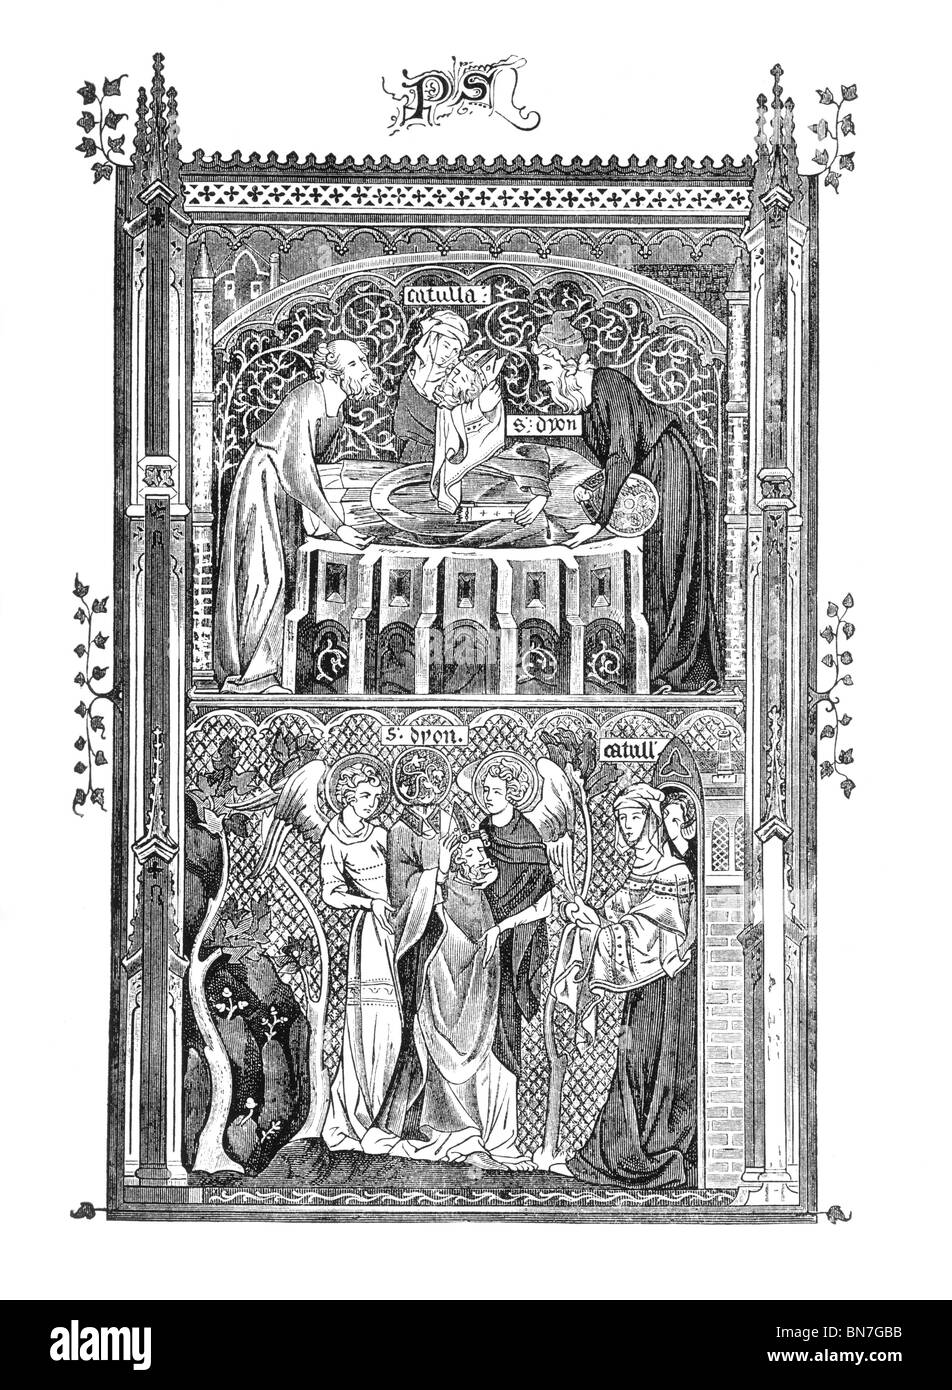 Schwarz / weiß Darstellung des Martyriums des St. Denys Stockfoto